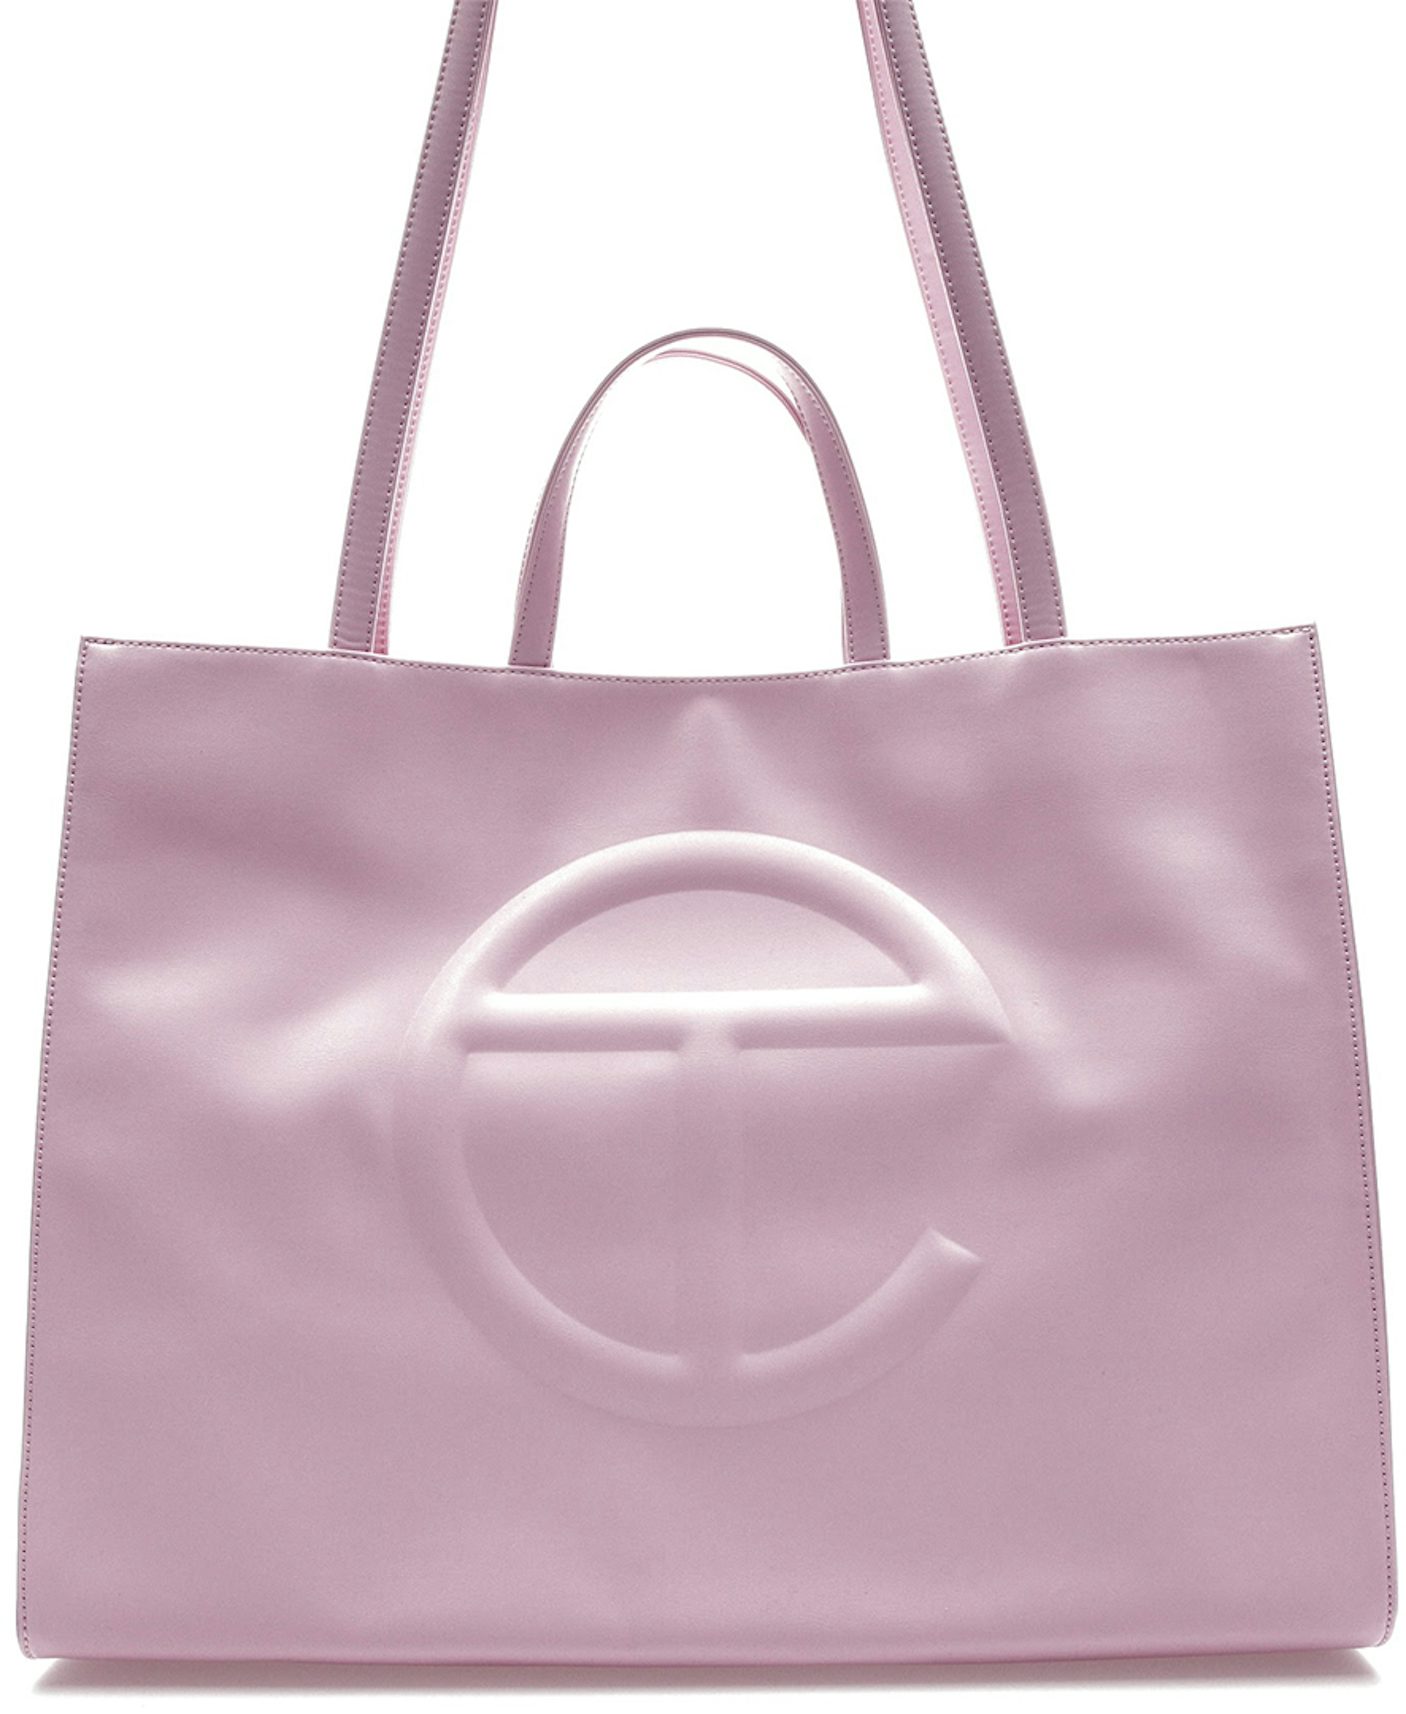 Telfar Small Cerulean Shopping Bag - Blue Shoulder Bags, Handbags